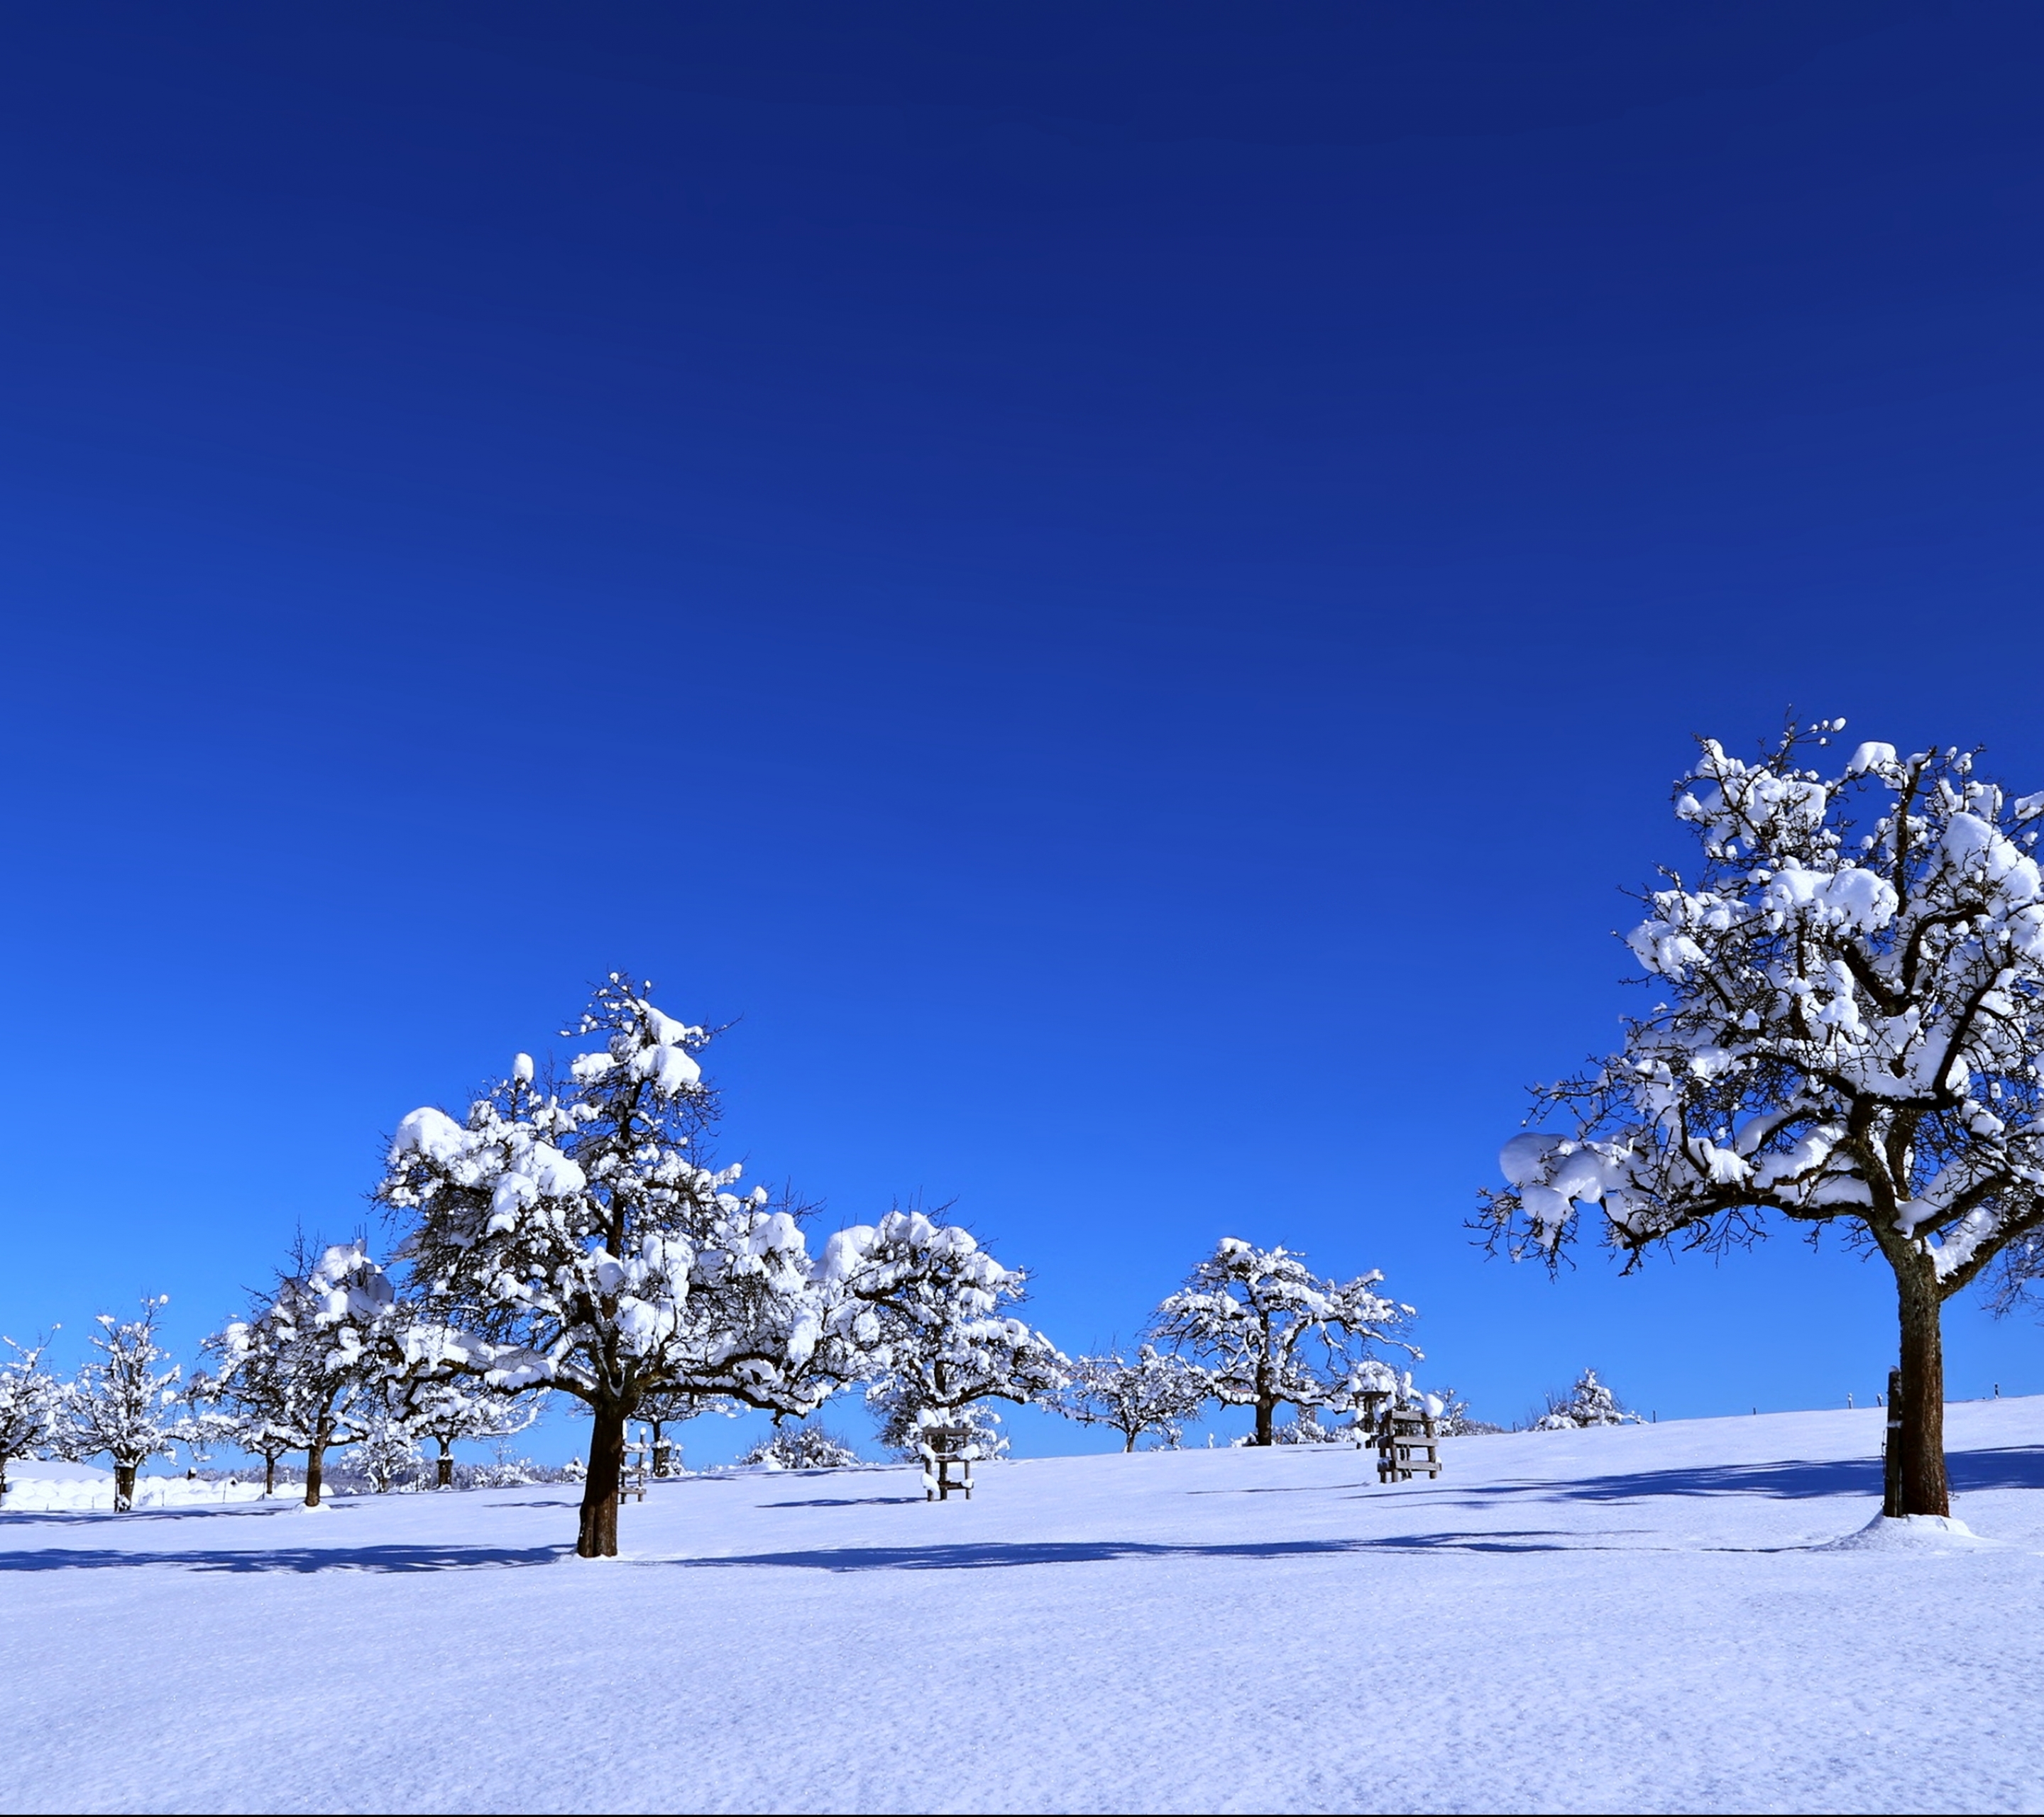 Скачать обои бесплатно Пейзаж, Зима, Природа, Деревья, Снег, Дерево, Ландшафт, Земля/природа картинка на рабочий стол ПК